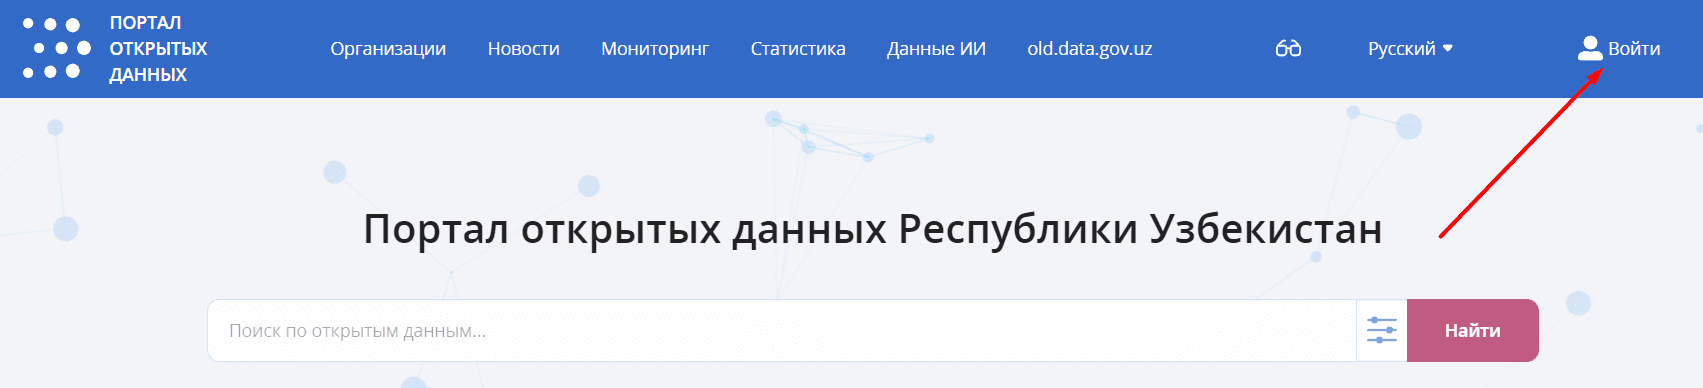 Портал открытых данных Республики Узбекистан (data.gov.uz) id.egov.uz